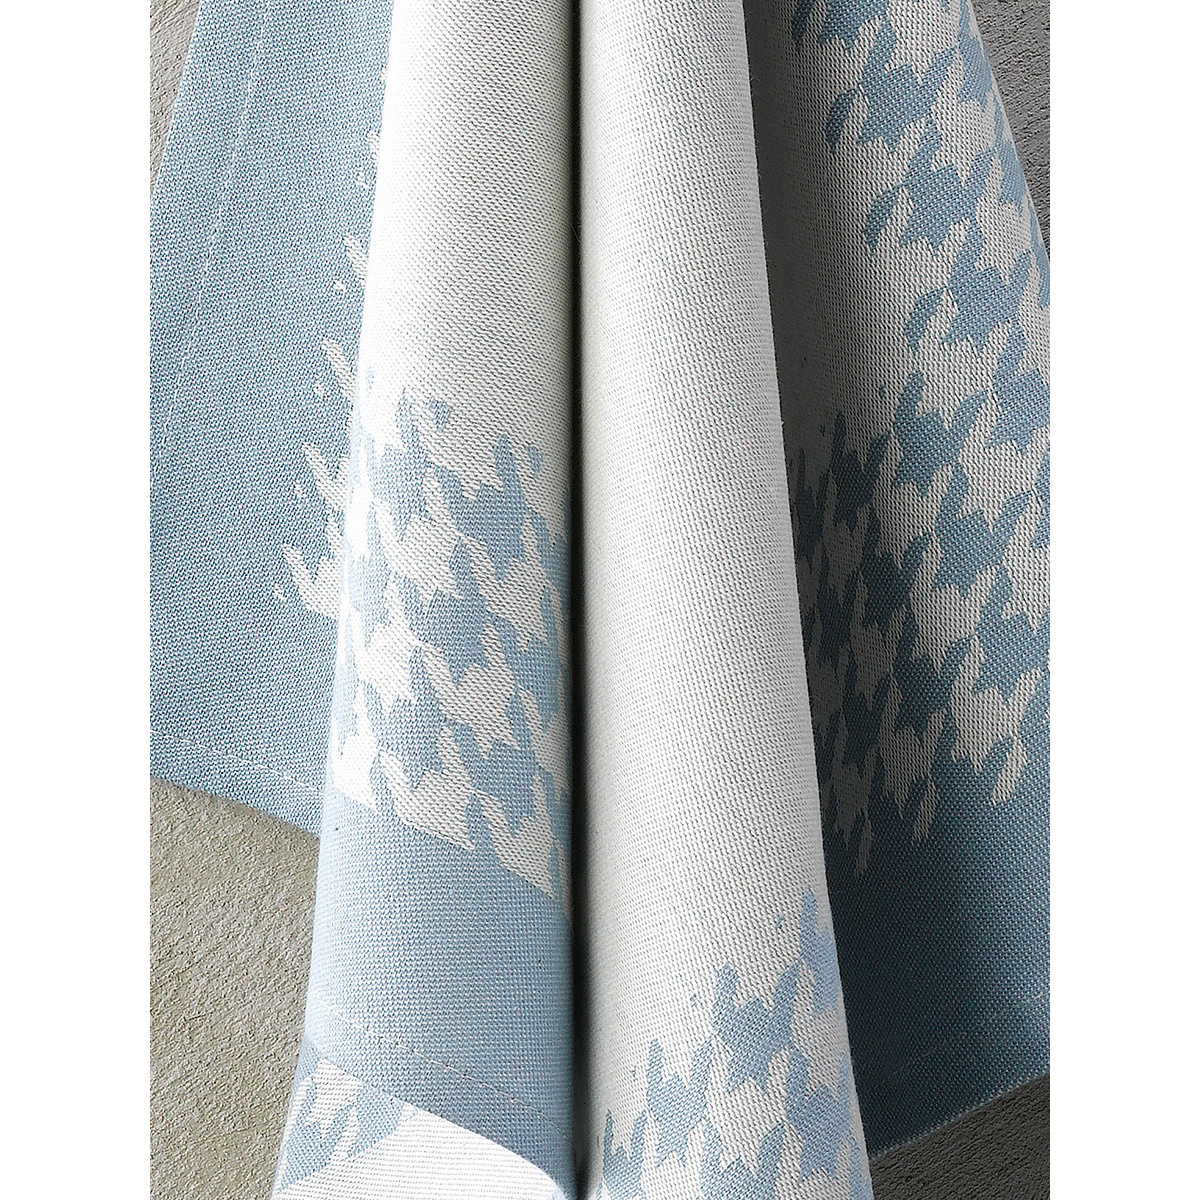 De Witte Lietaer Tea towel Pied de Poule, Oxyde - 2 pieces - 65 x 65 cm - Cotton